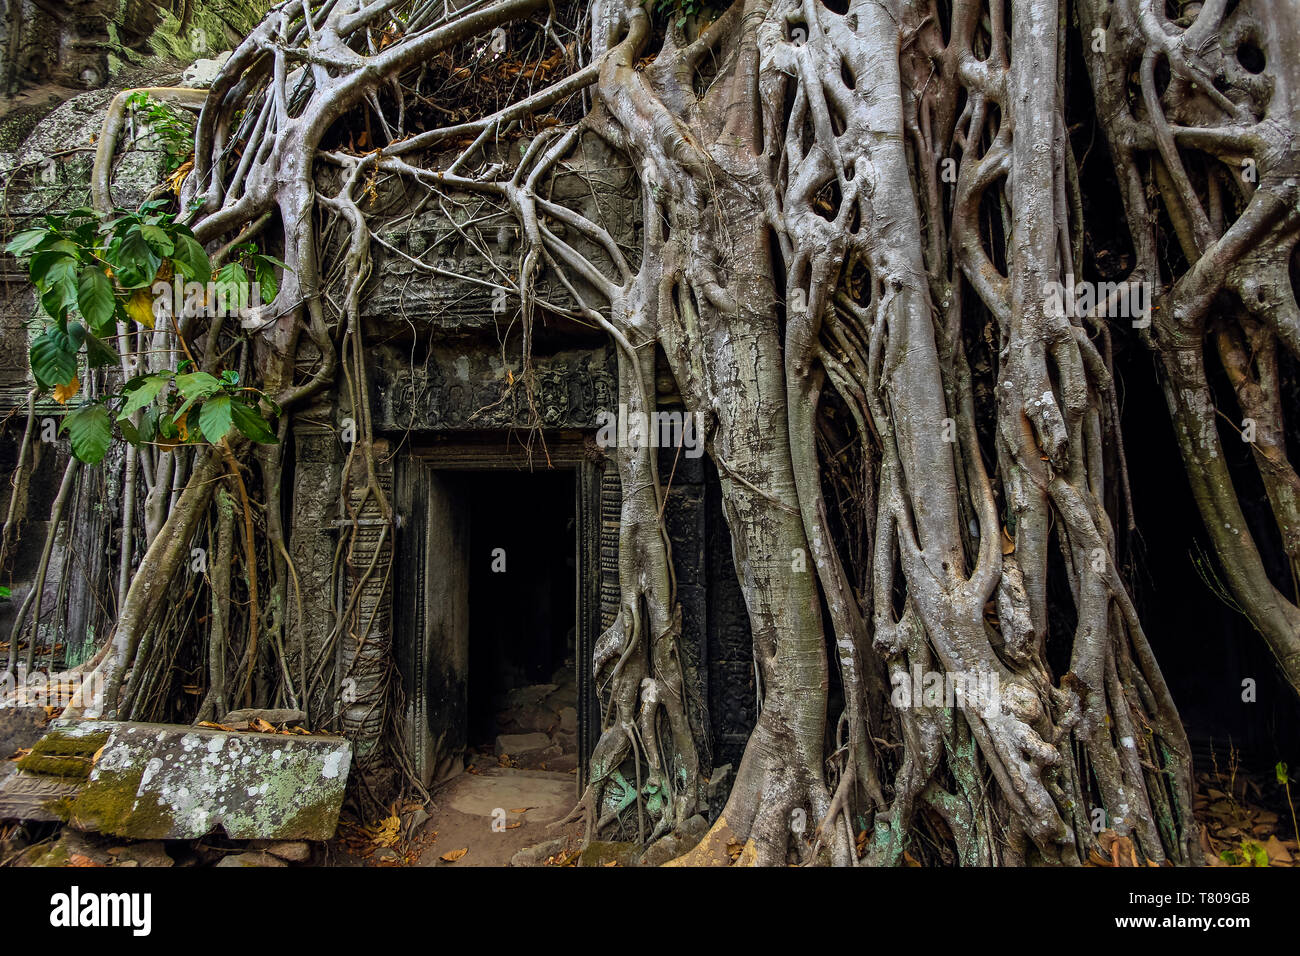 Wurzeln der lithophyte Würgefeige im 12. Jahrhundert Tempelanlage Ta Prohm, einem Tomb Raider film Location, Angkor, UNESCO, Siem Reap, Kambodscha, Asien Stockfoto